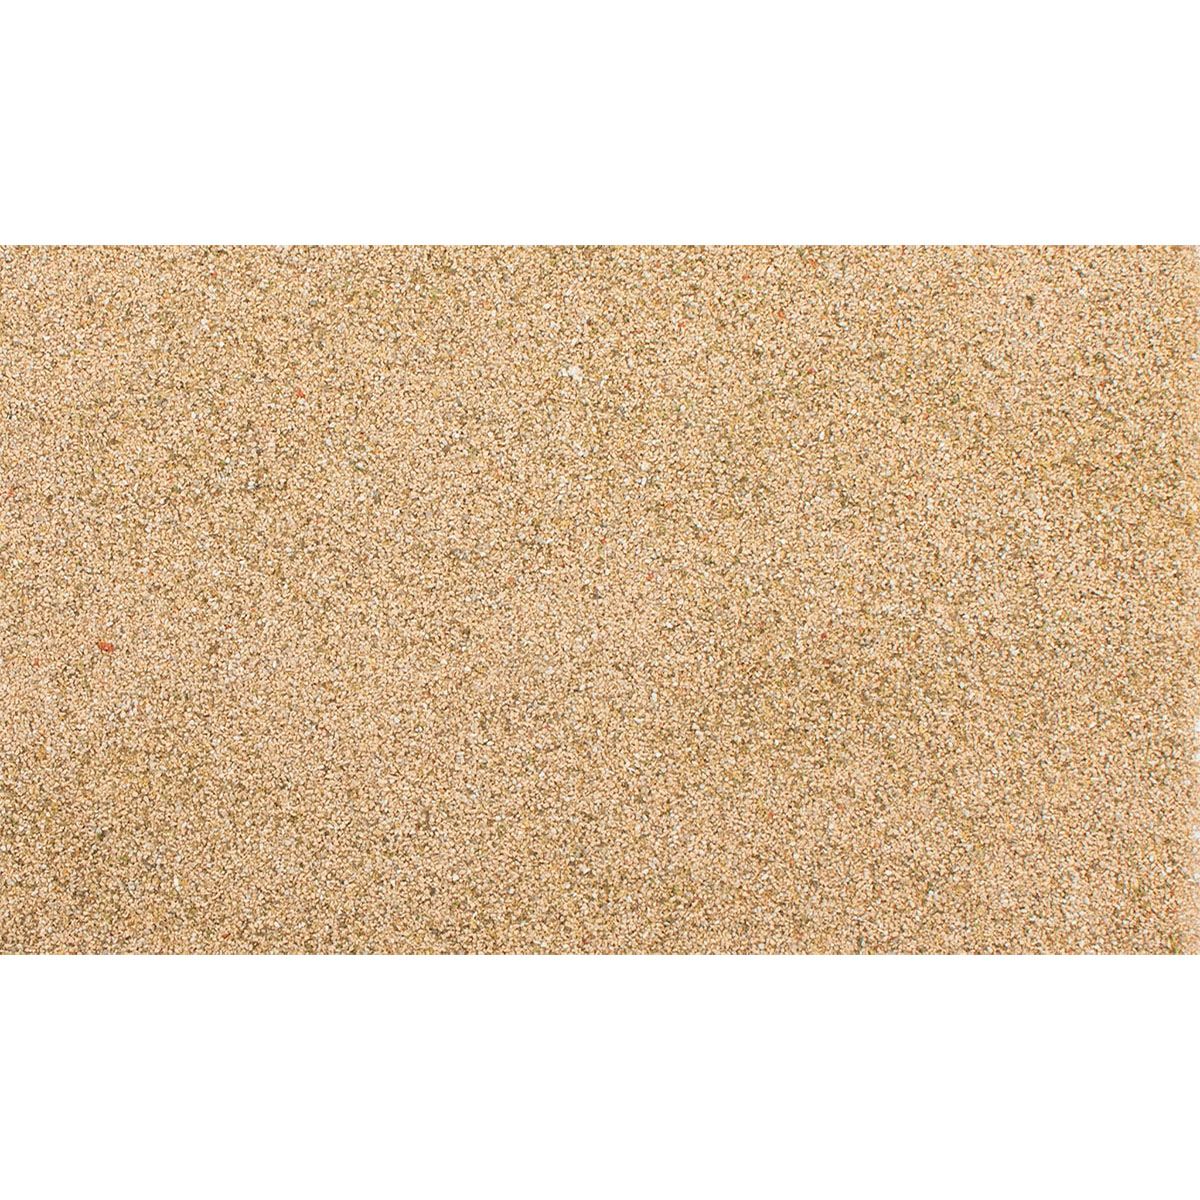 All Game Terrain Natural Sand (159 ccm)